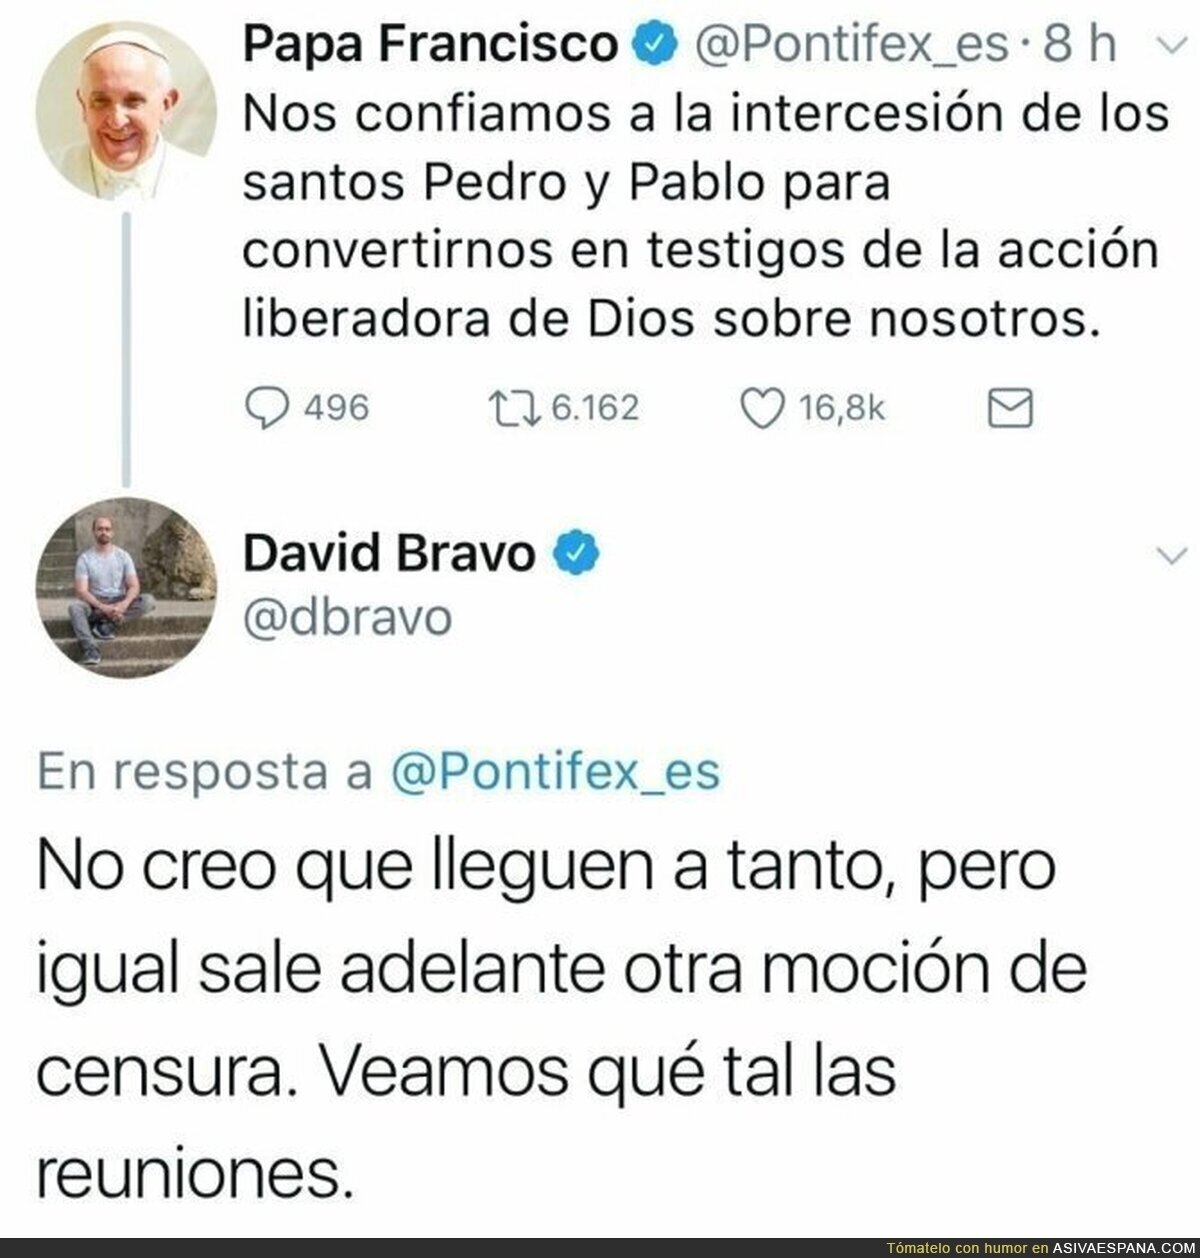 El Papa está muy metido en política Española